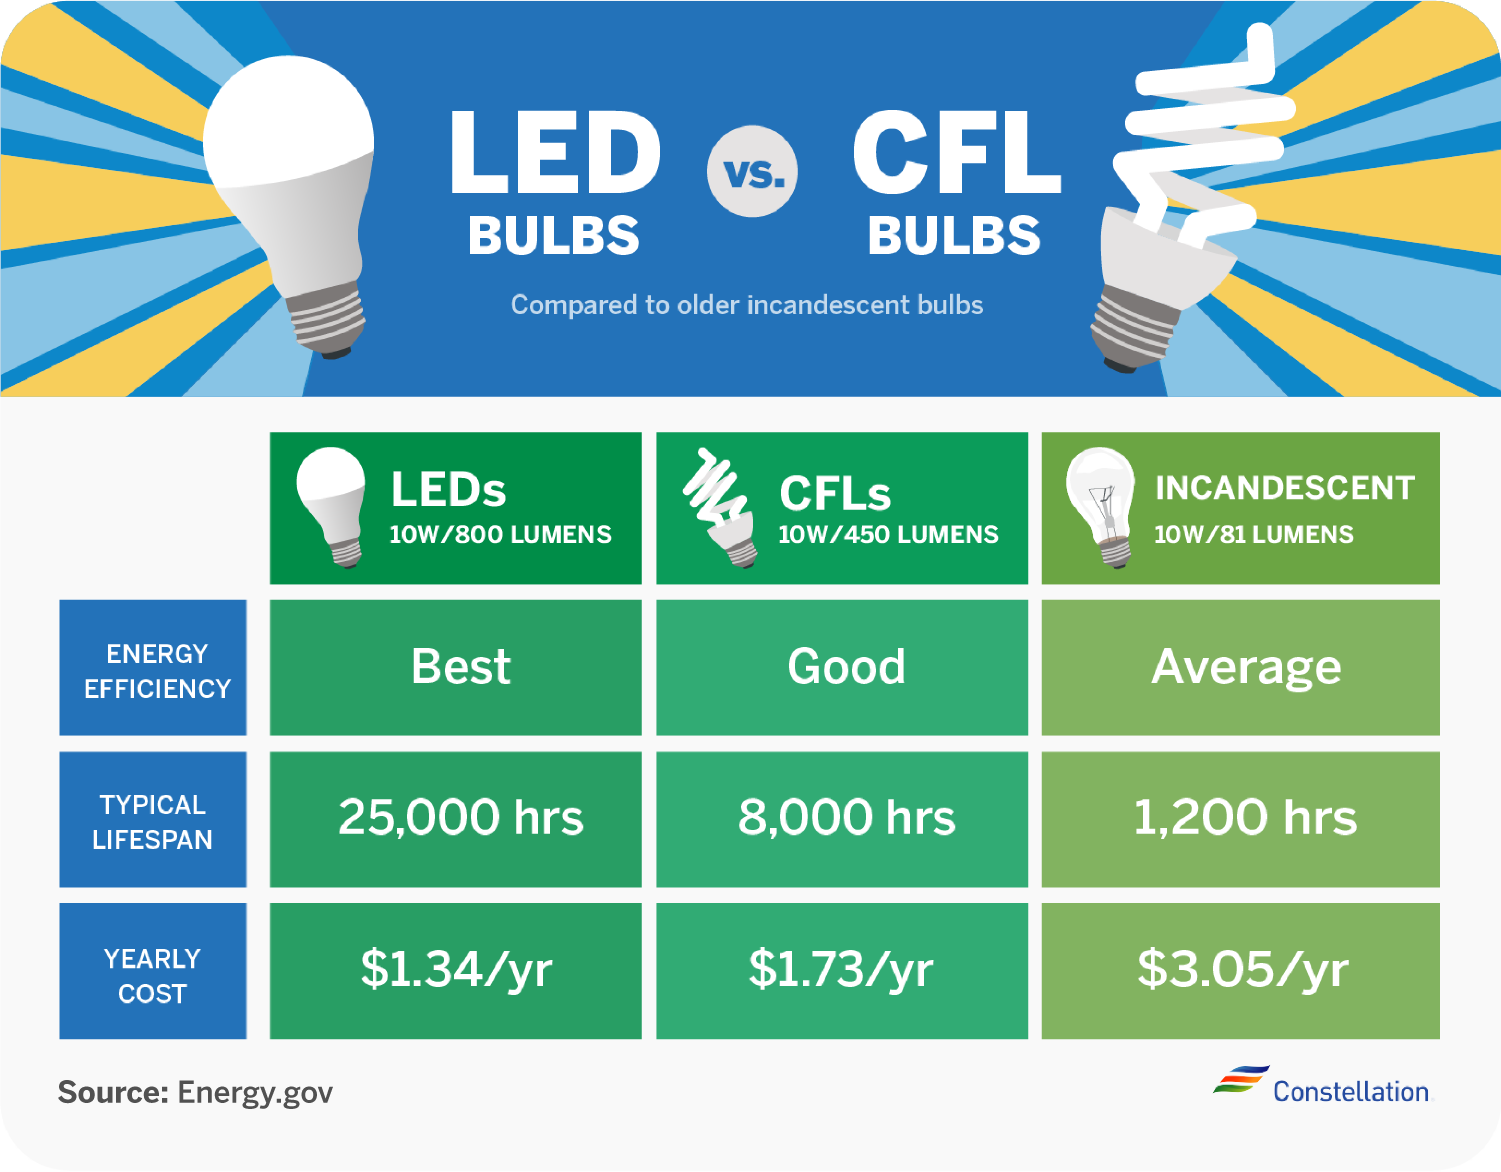 CFL vs. LED bulbs